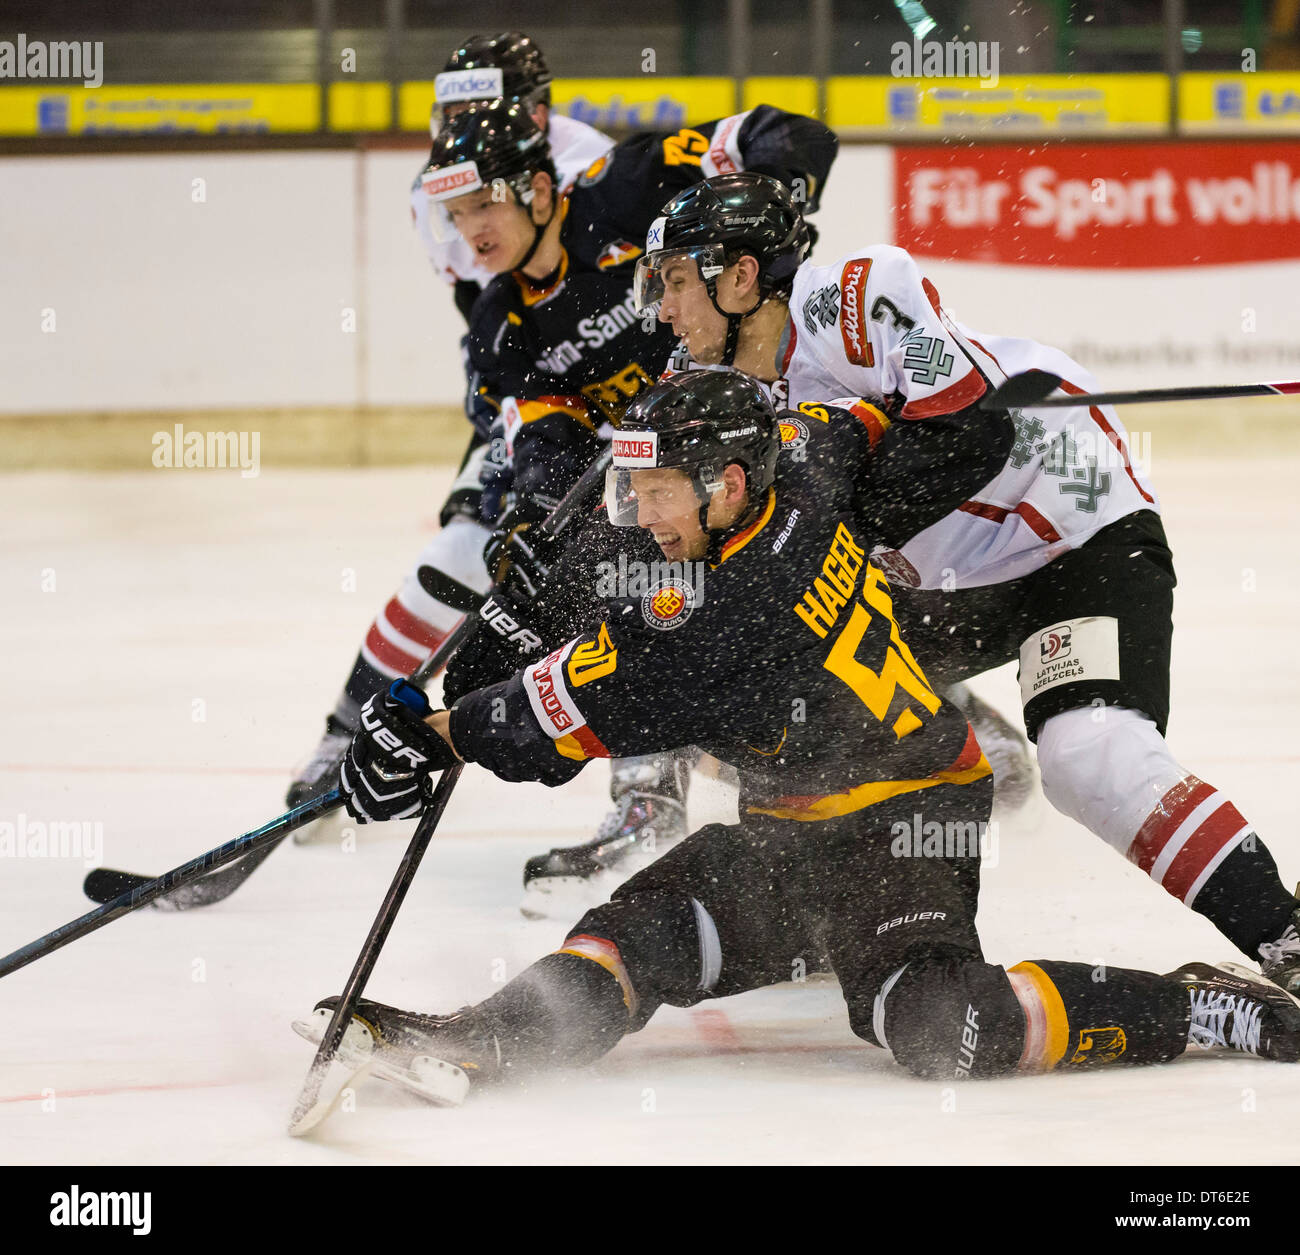 Joueur de hockey sur glace international allemand Patrick Hager, en face, joue pour l'équipe nationale allemande contre la Lettonie. Banque D'Images